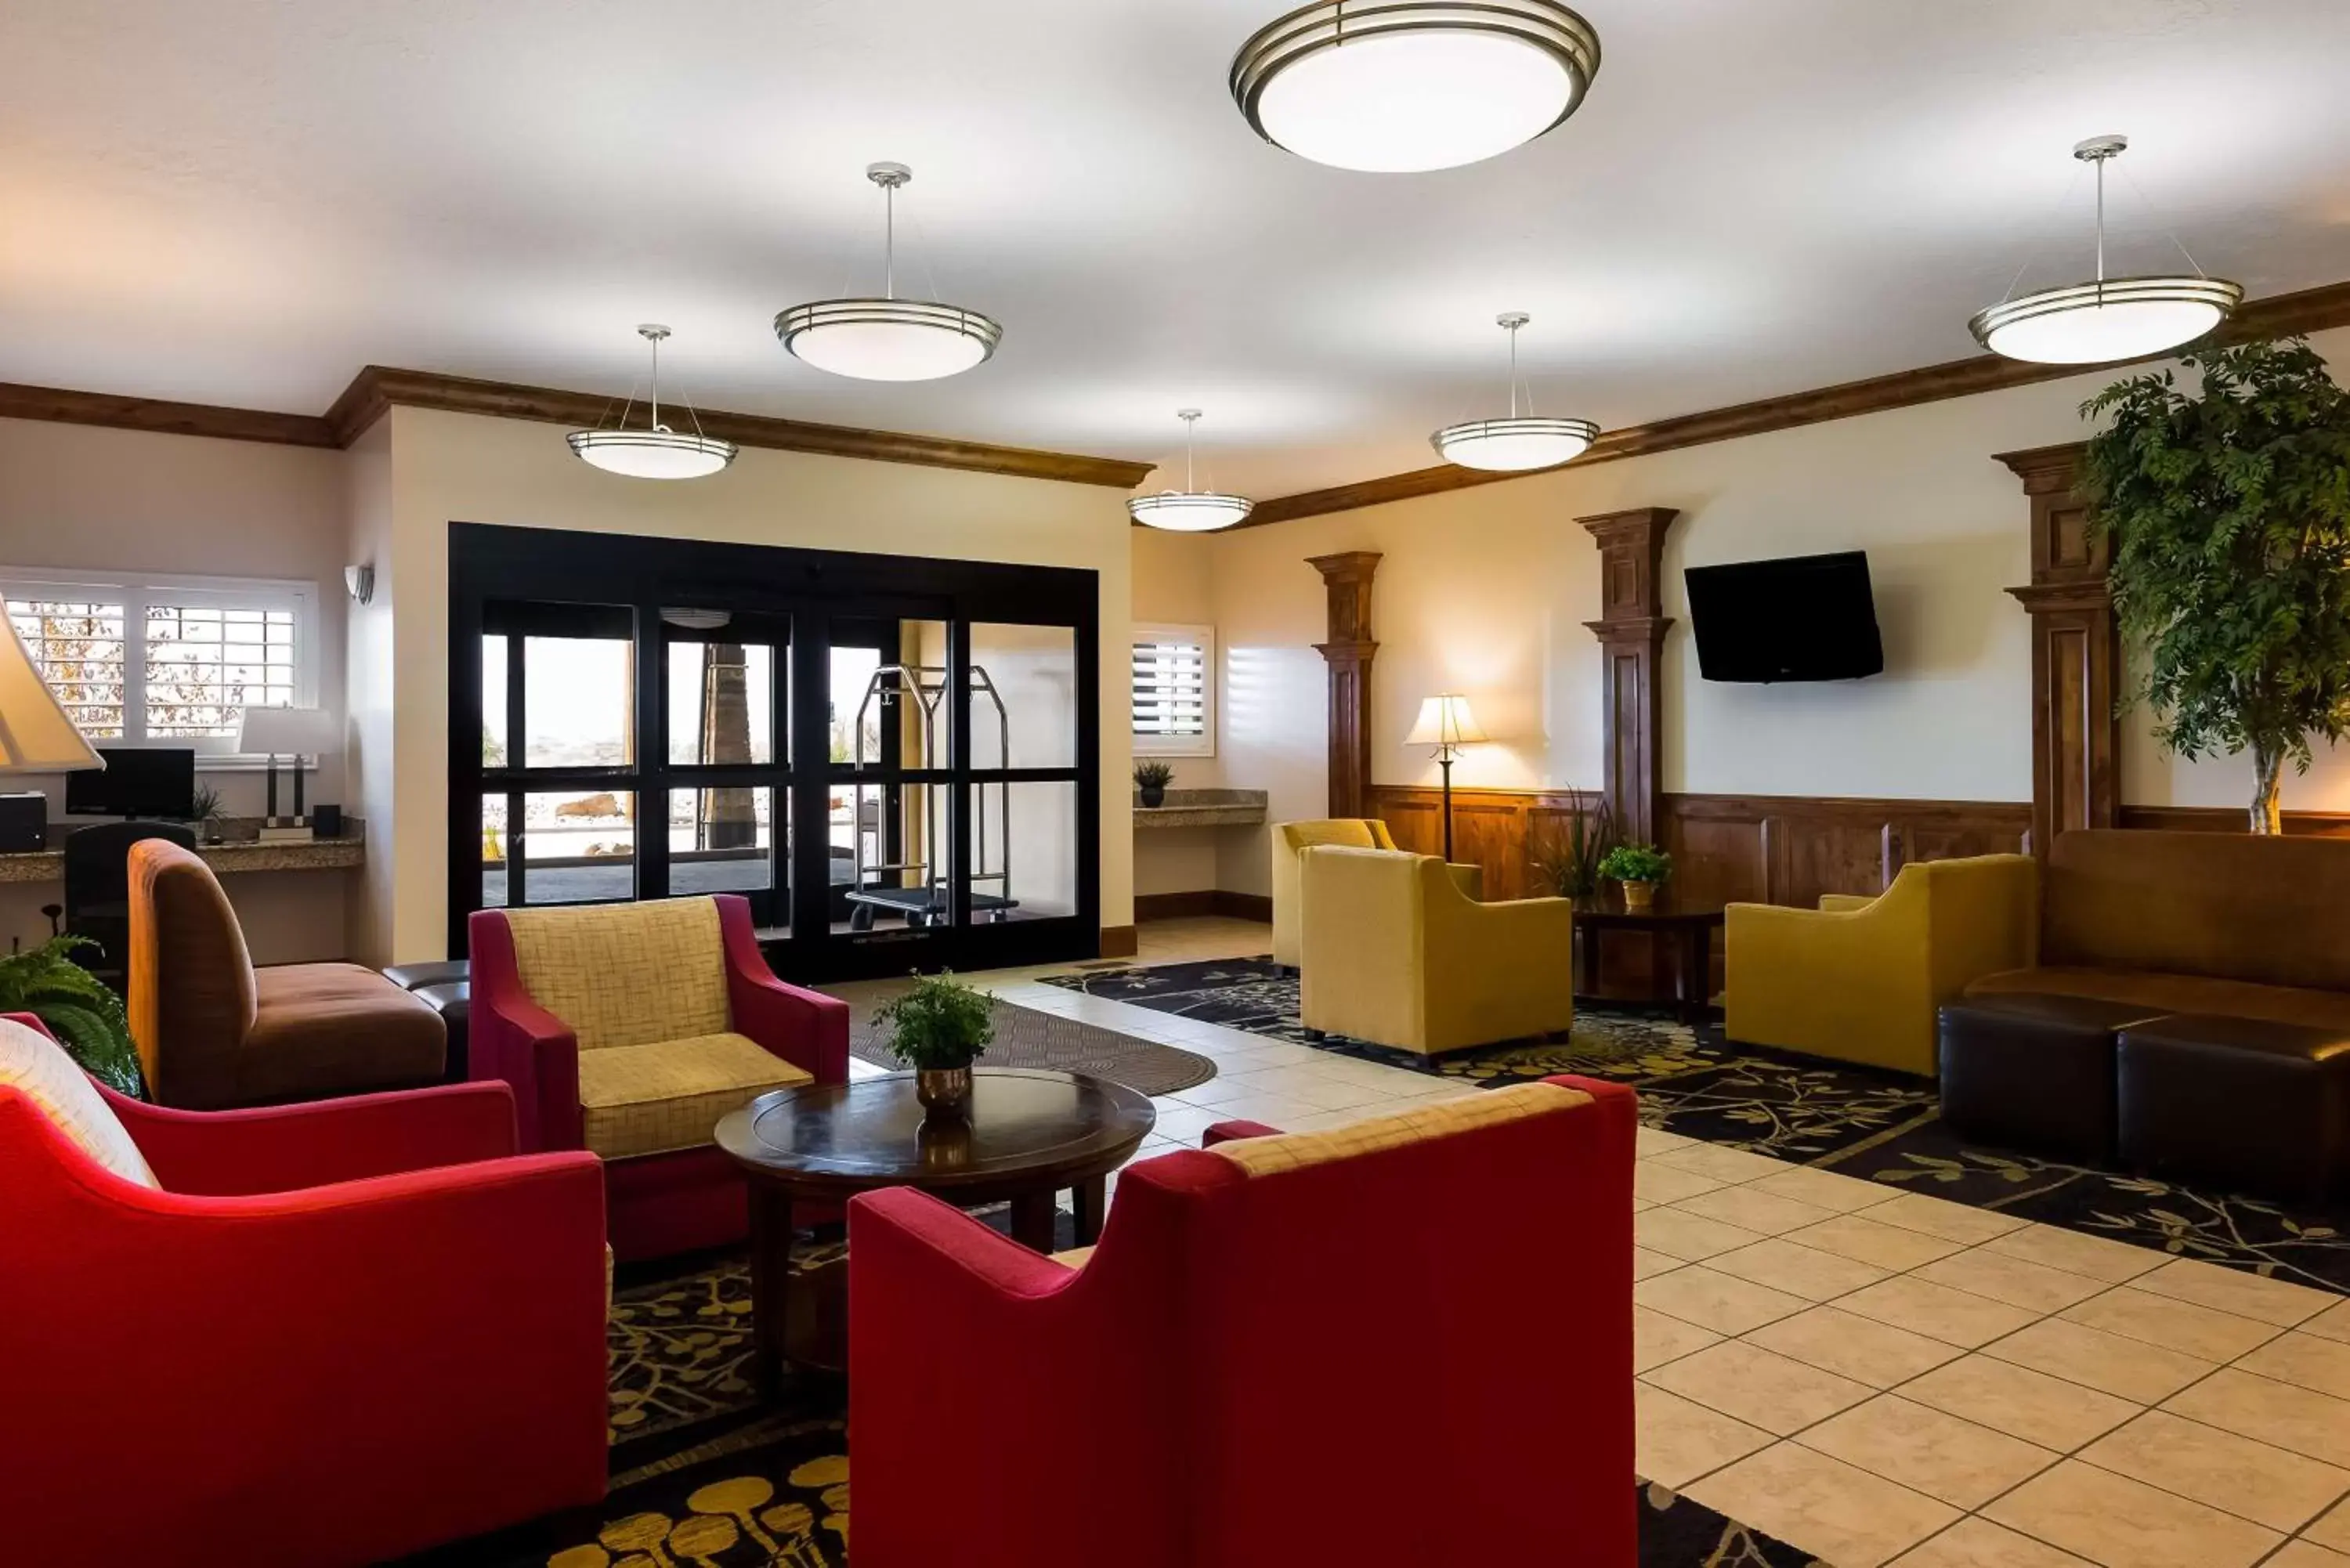 Lobby or reception, Lobby/Reception in Best Western Plus Landmark Hotel